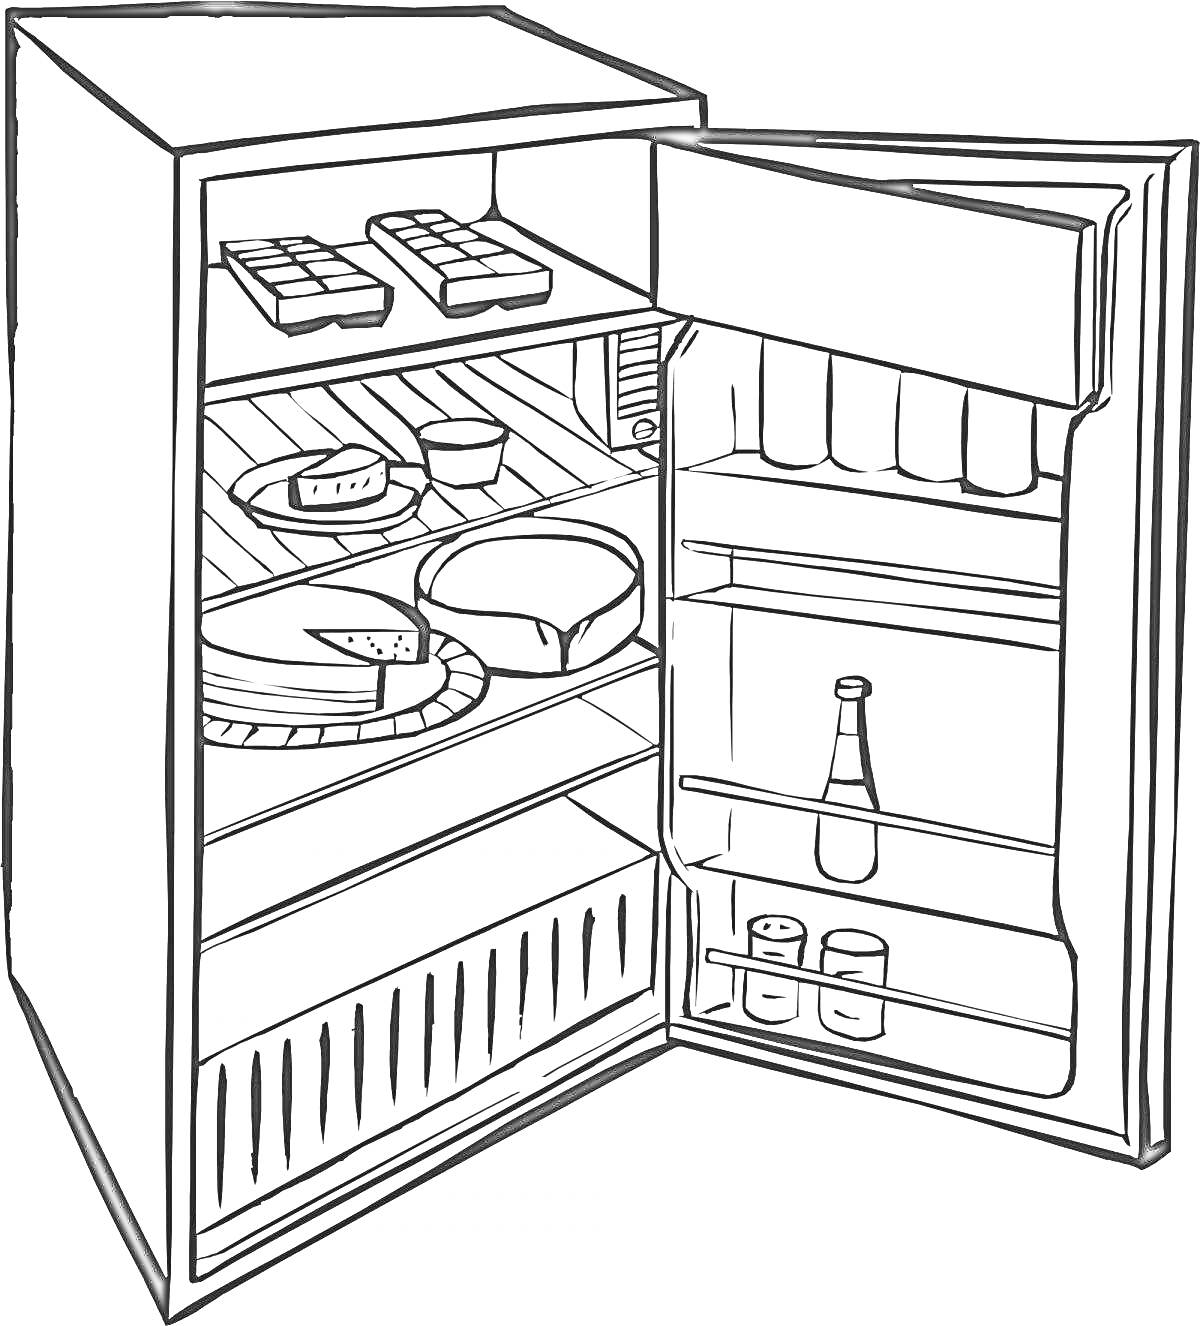 Открытый холодильник с едой и напитками (полки с продуктами, дверца с бутылкой и банками)